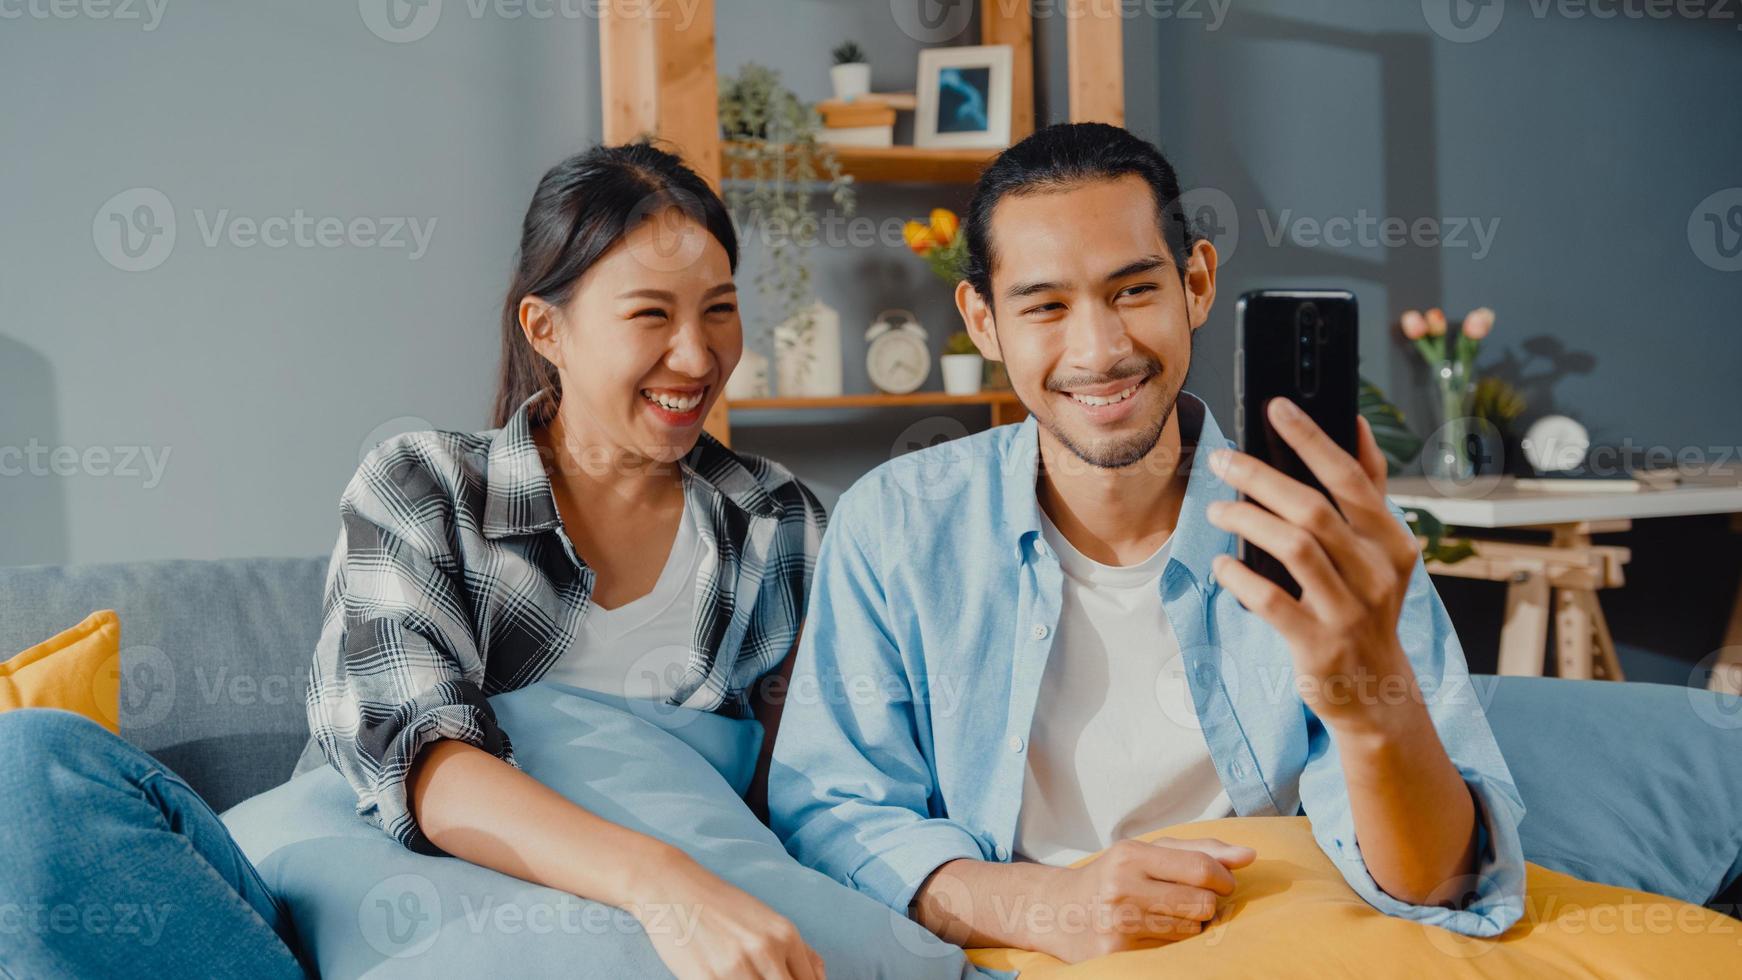 heureux jeune couple asiatique homme et femme assis sur le canapé utiliser un appel vidéo facetime sur smartphone avec des amis et la famille dans le salon à la maison. rester à la maison en quarantaine, distanciation sociale, concept de jeune marié. photo